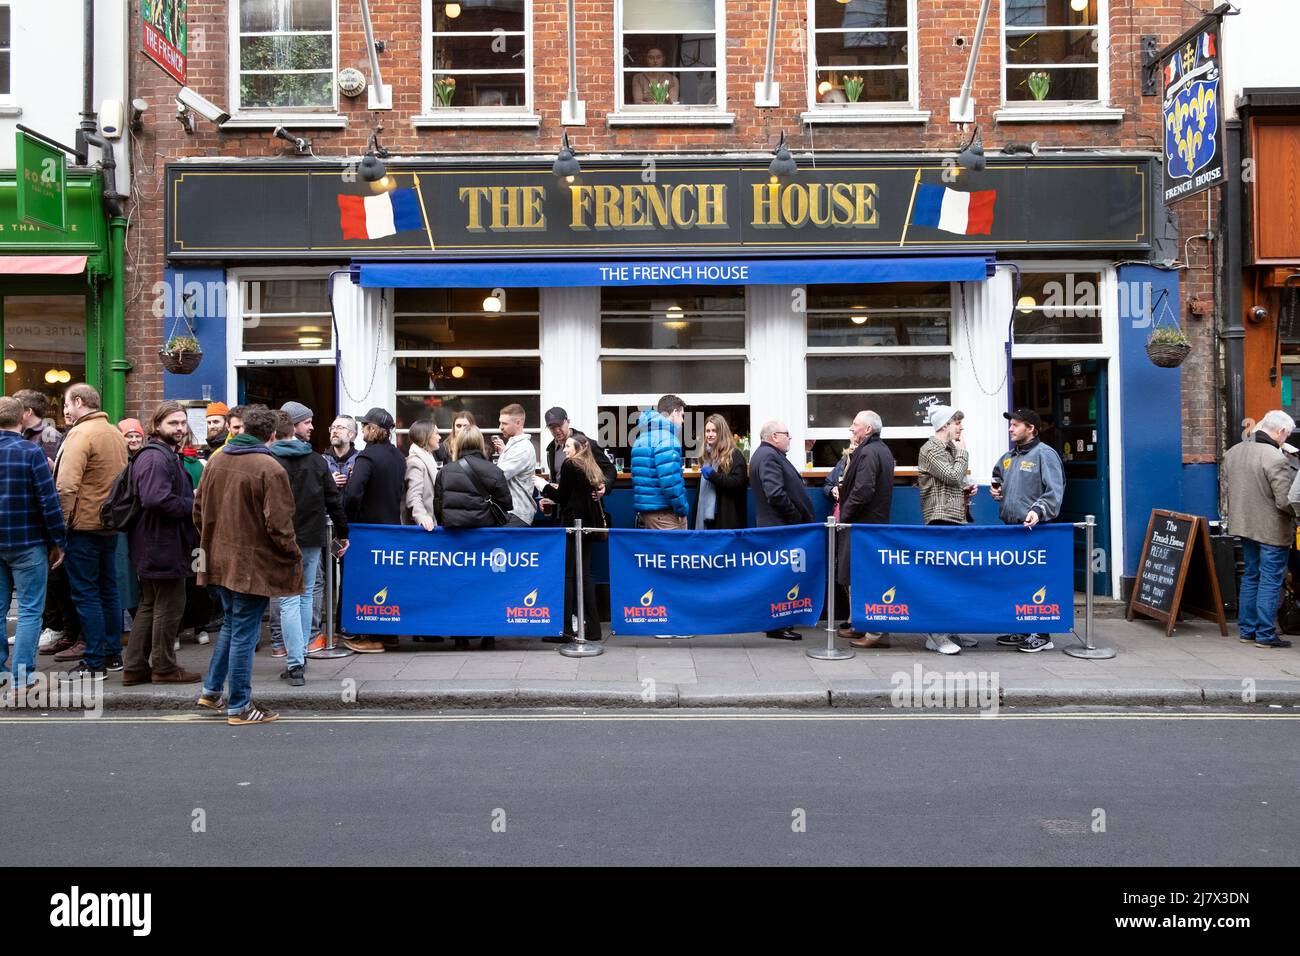 Foule de personnes debout devant le bar-restaurant French House à Dean Street Soho après la pandémie printemps 2022 Londres Angleterre Royaume-Uni KATHY DEWITT Banque D'Images